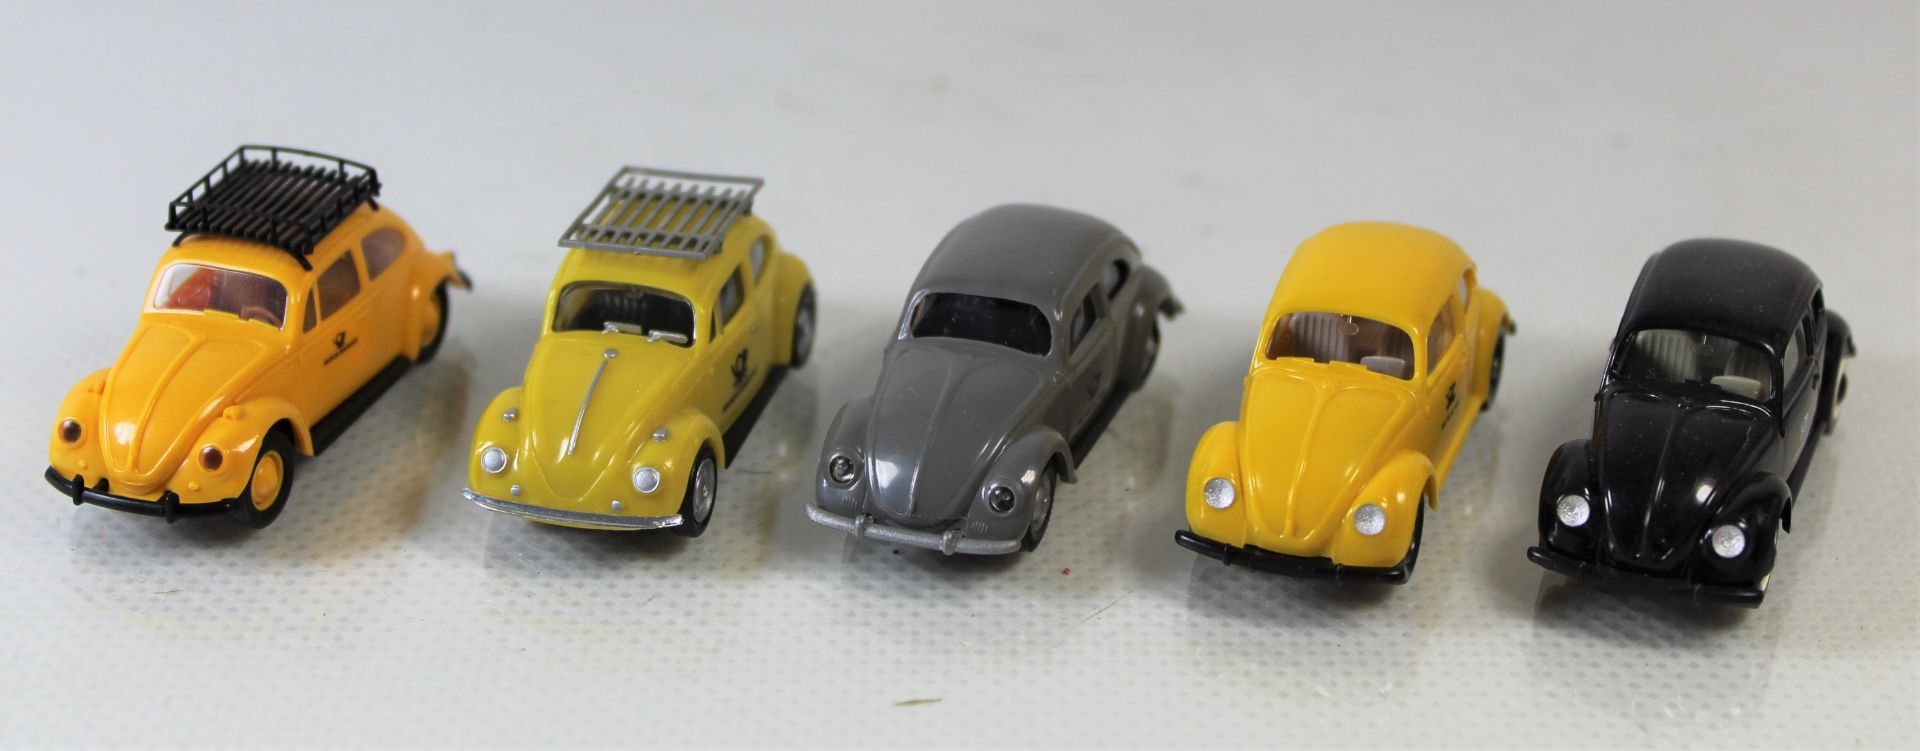 5 Modellbaufahrzeuge VW Käfer mit Deutsche Post/Funkmessdienst Beschriftung, 1 x Herpa, 1 x Brekina